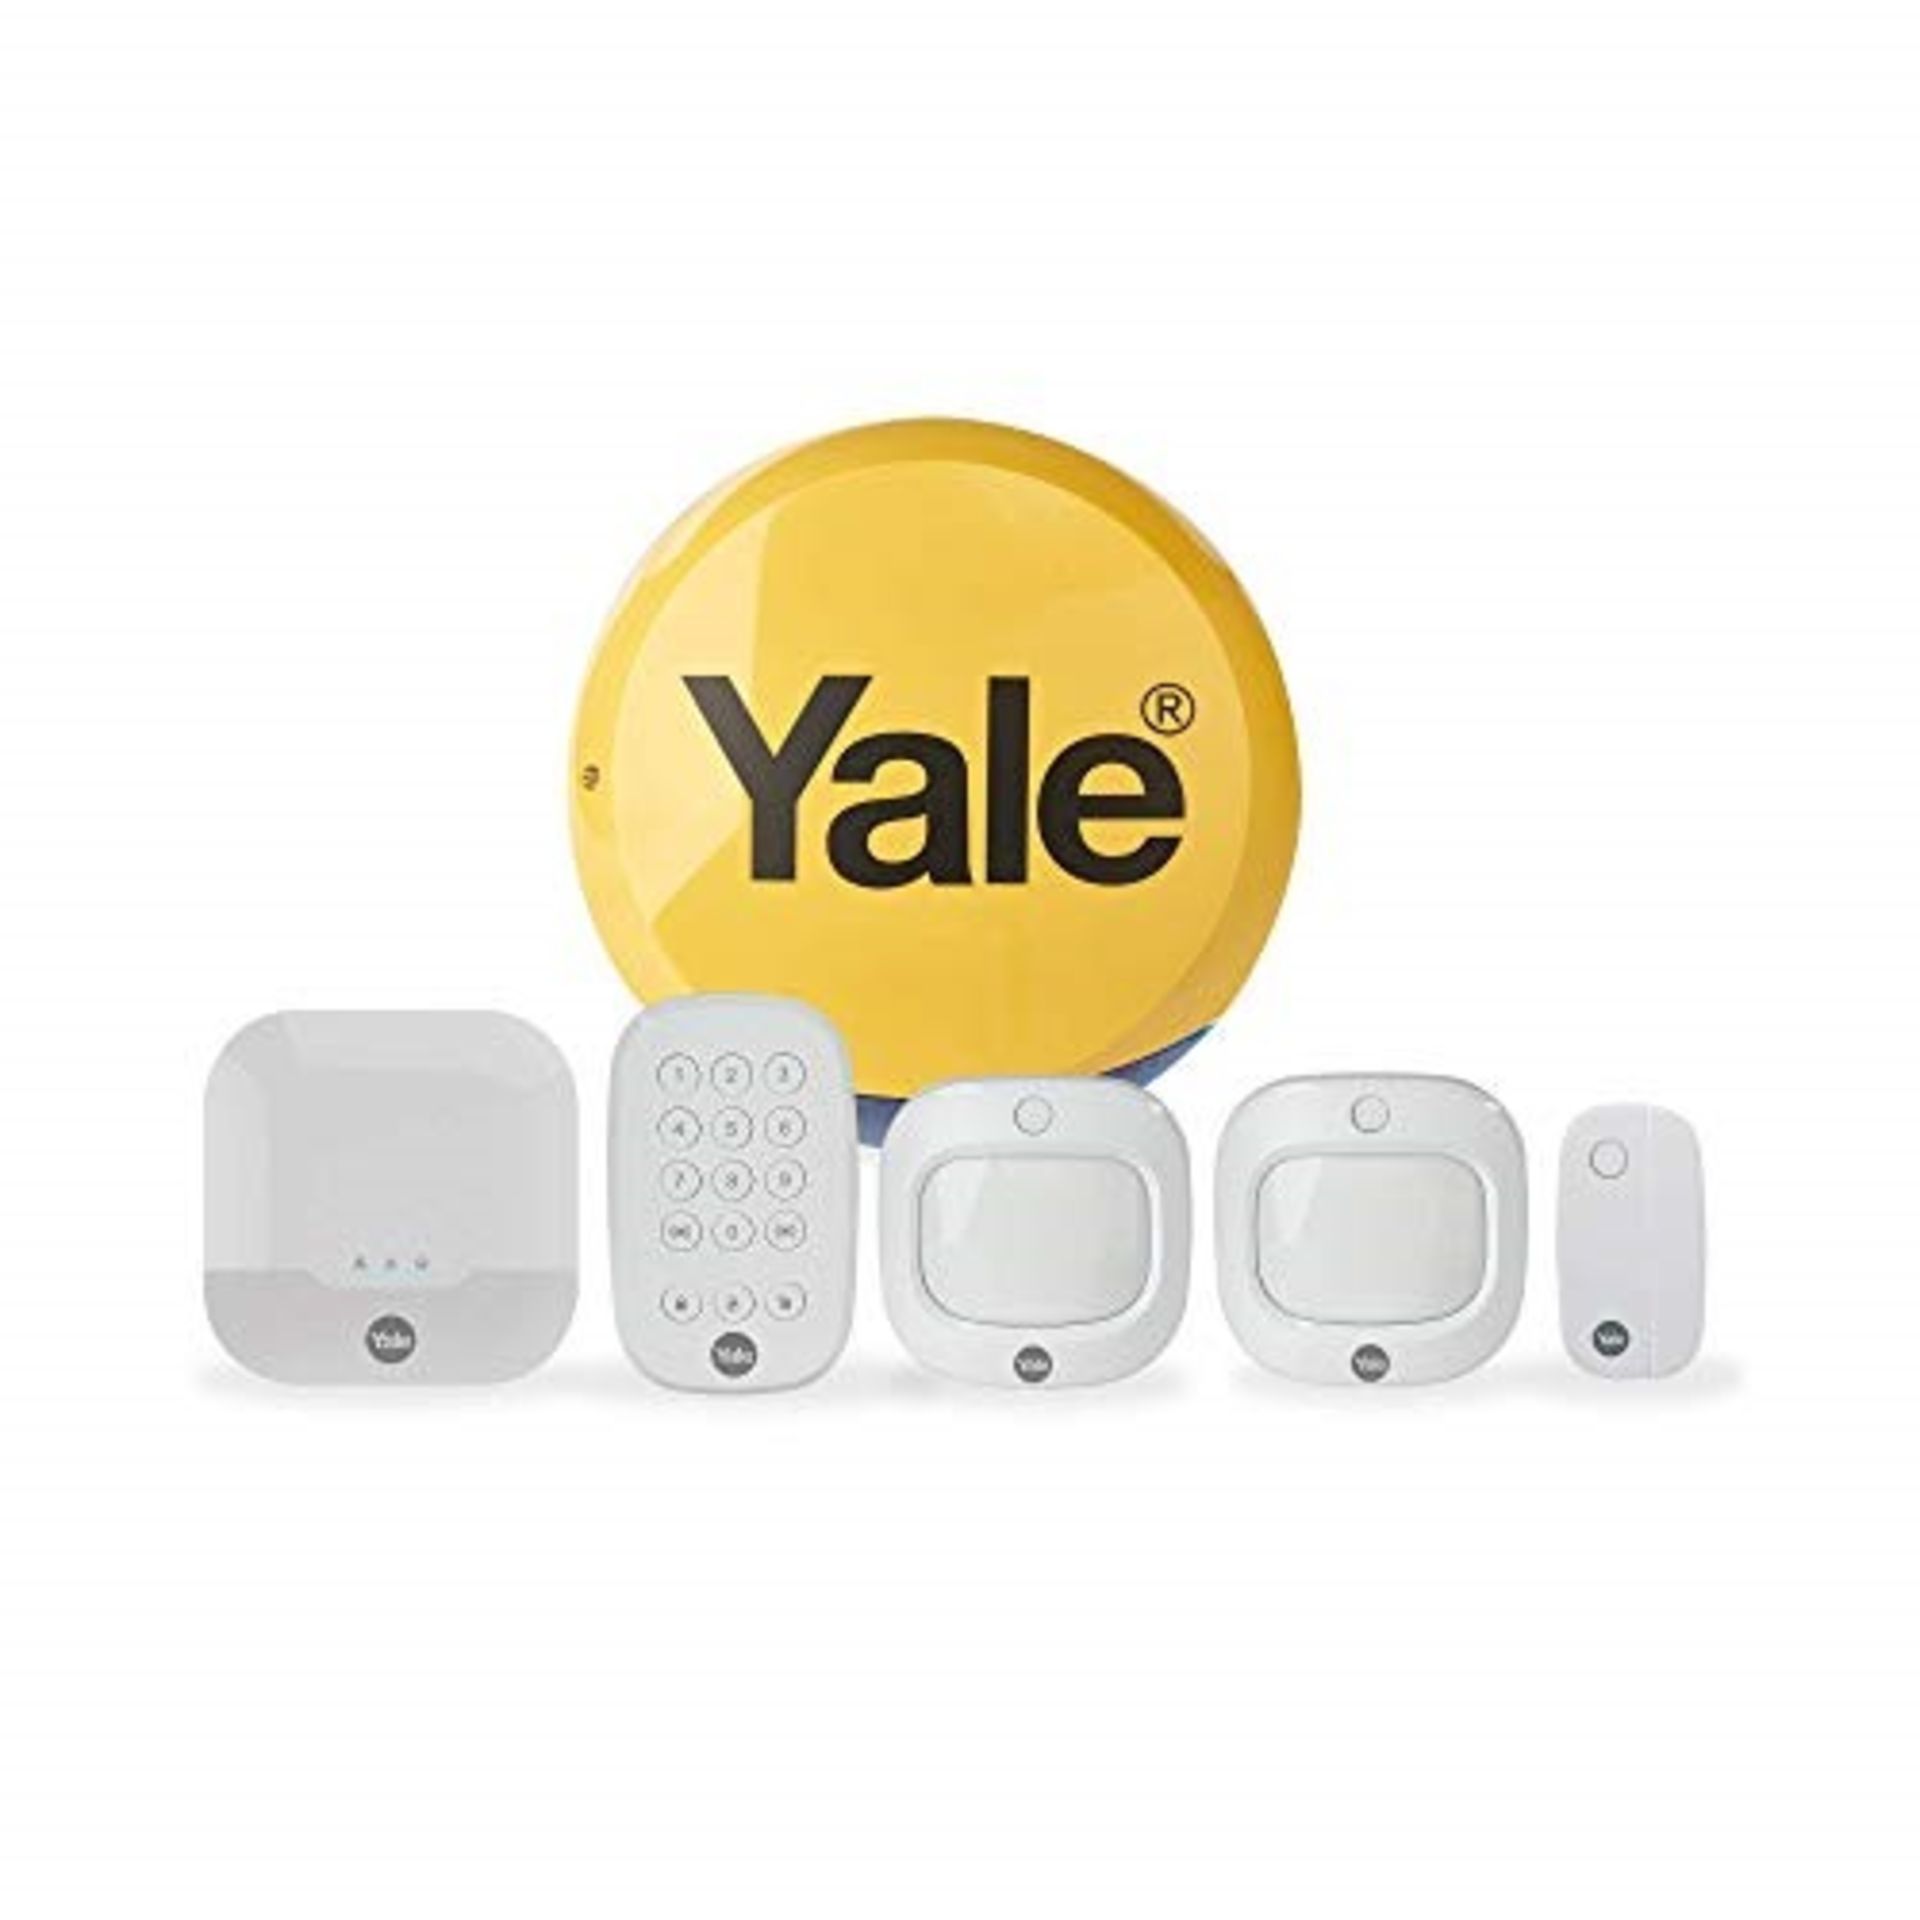 RRP £224.00 Y�a�l�e� �I�A�-�3�2�0� �S�y�n�c� �S�m�a�r�t� �H�o�m�e� �S�e�c�u�r�i�t�y� �A�l�a�r�m�,� �